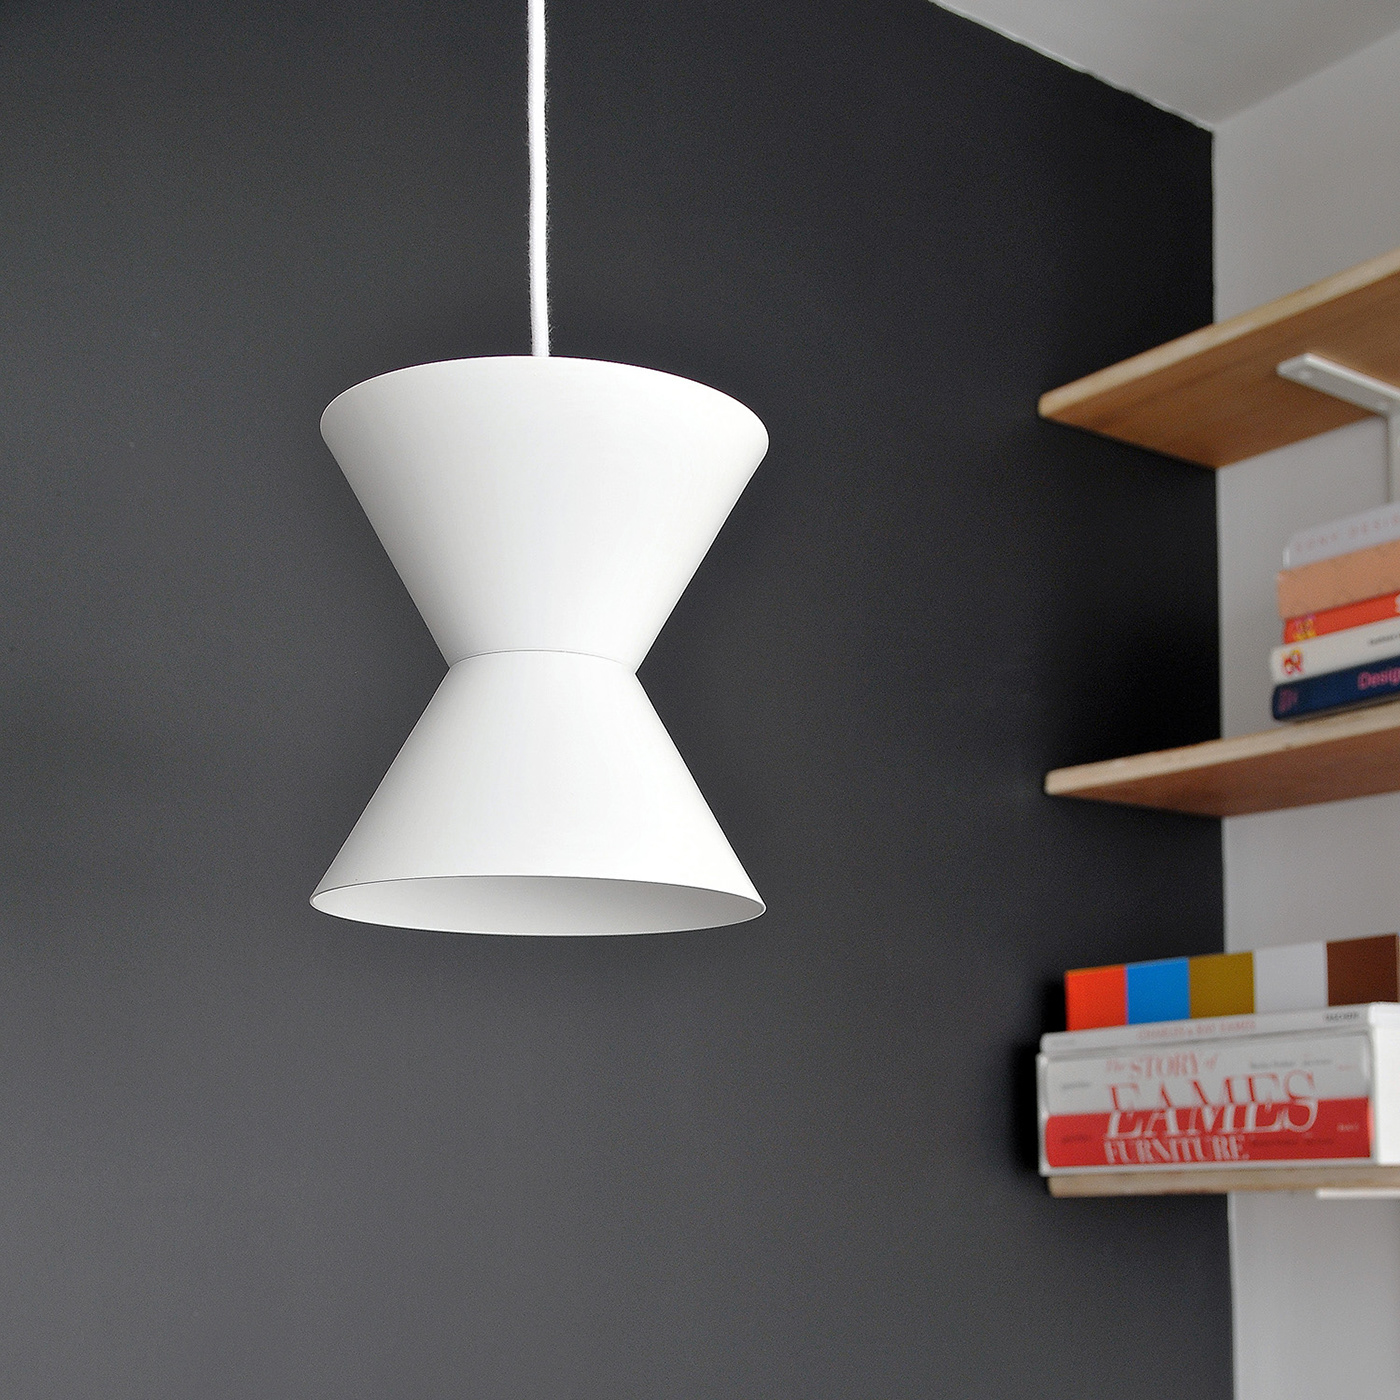 Ceiling lamp design Farol home interior design  interiors Lamp light lighting Lighting Design 